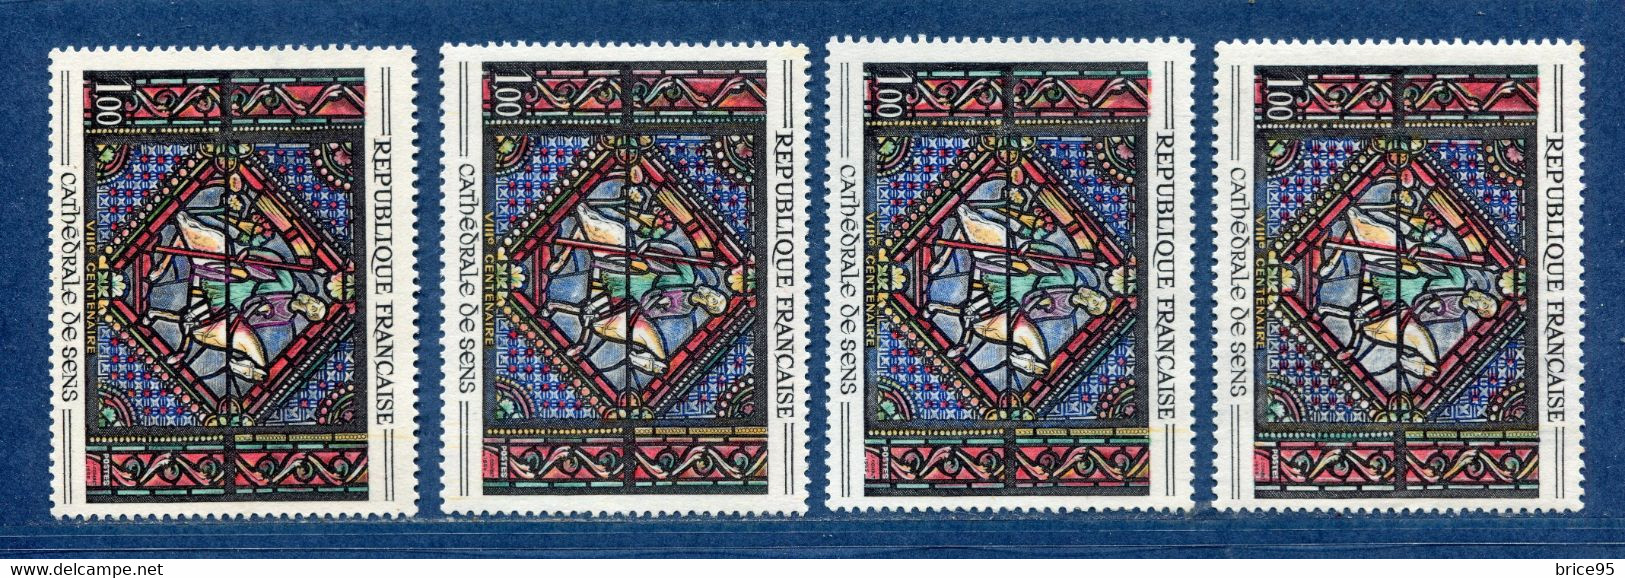 ⭐ France - Variété - YT N° 1427 - Couleurs - Pétouilles - Neuf Sans Charnière - 1964 Et 1965 ⭐ - Unused Stamps